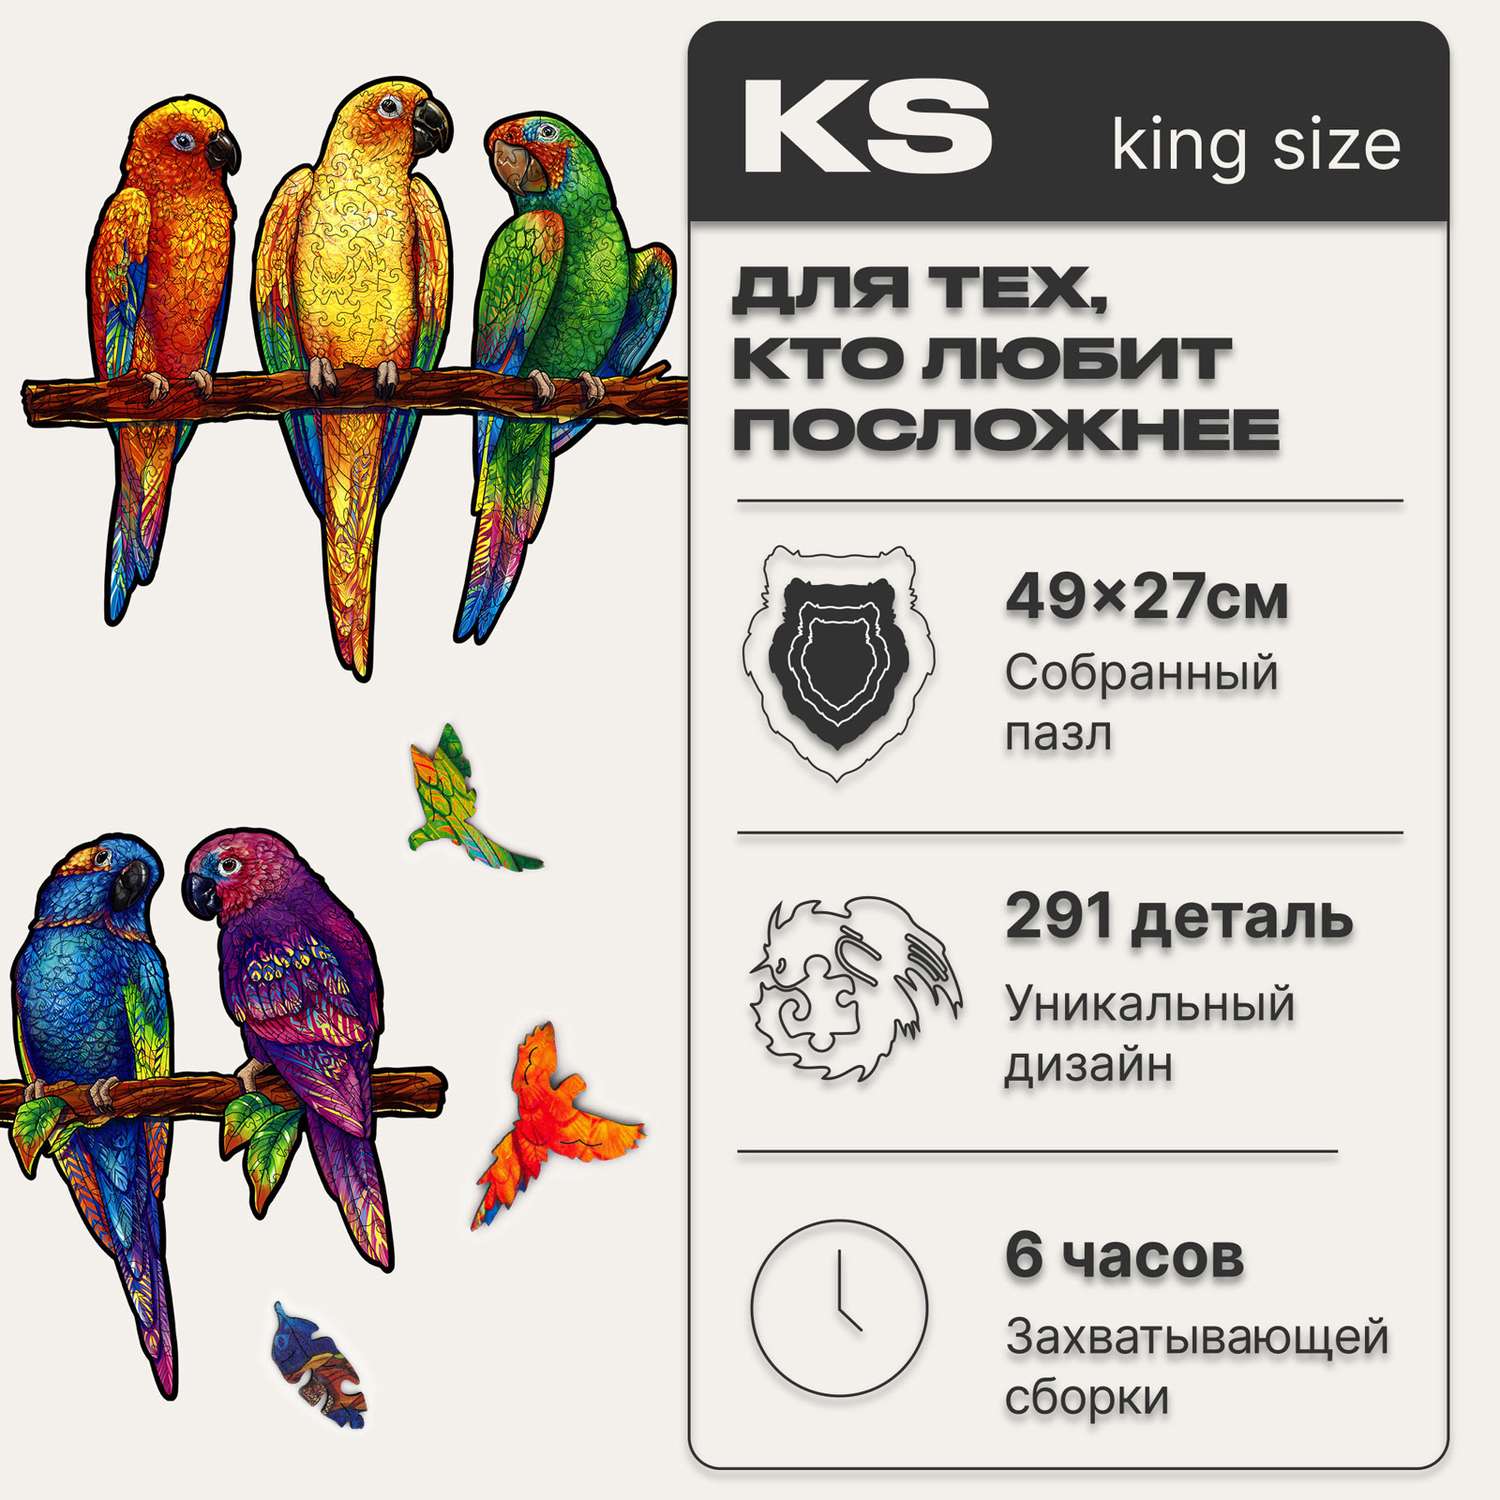 Пазл деревянный UNIDRAGON Игривые попугаи размер 49x27 см 291 деталь - фото 2